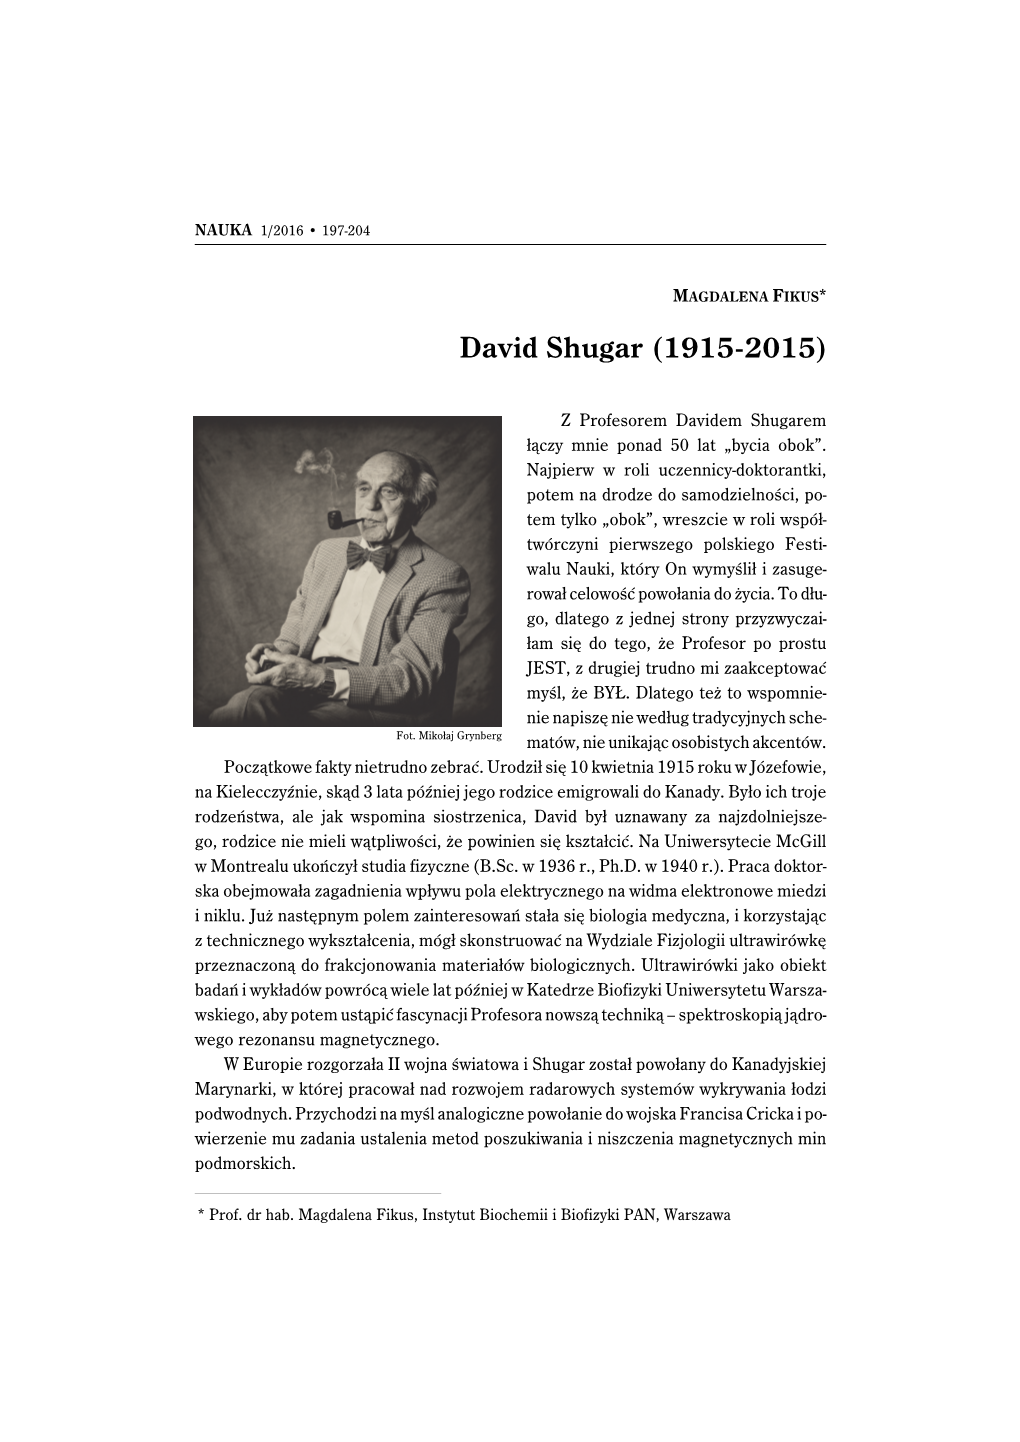 David Shugar (1915-2015)